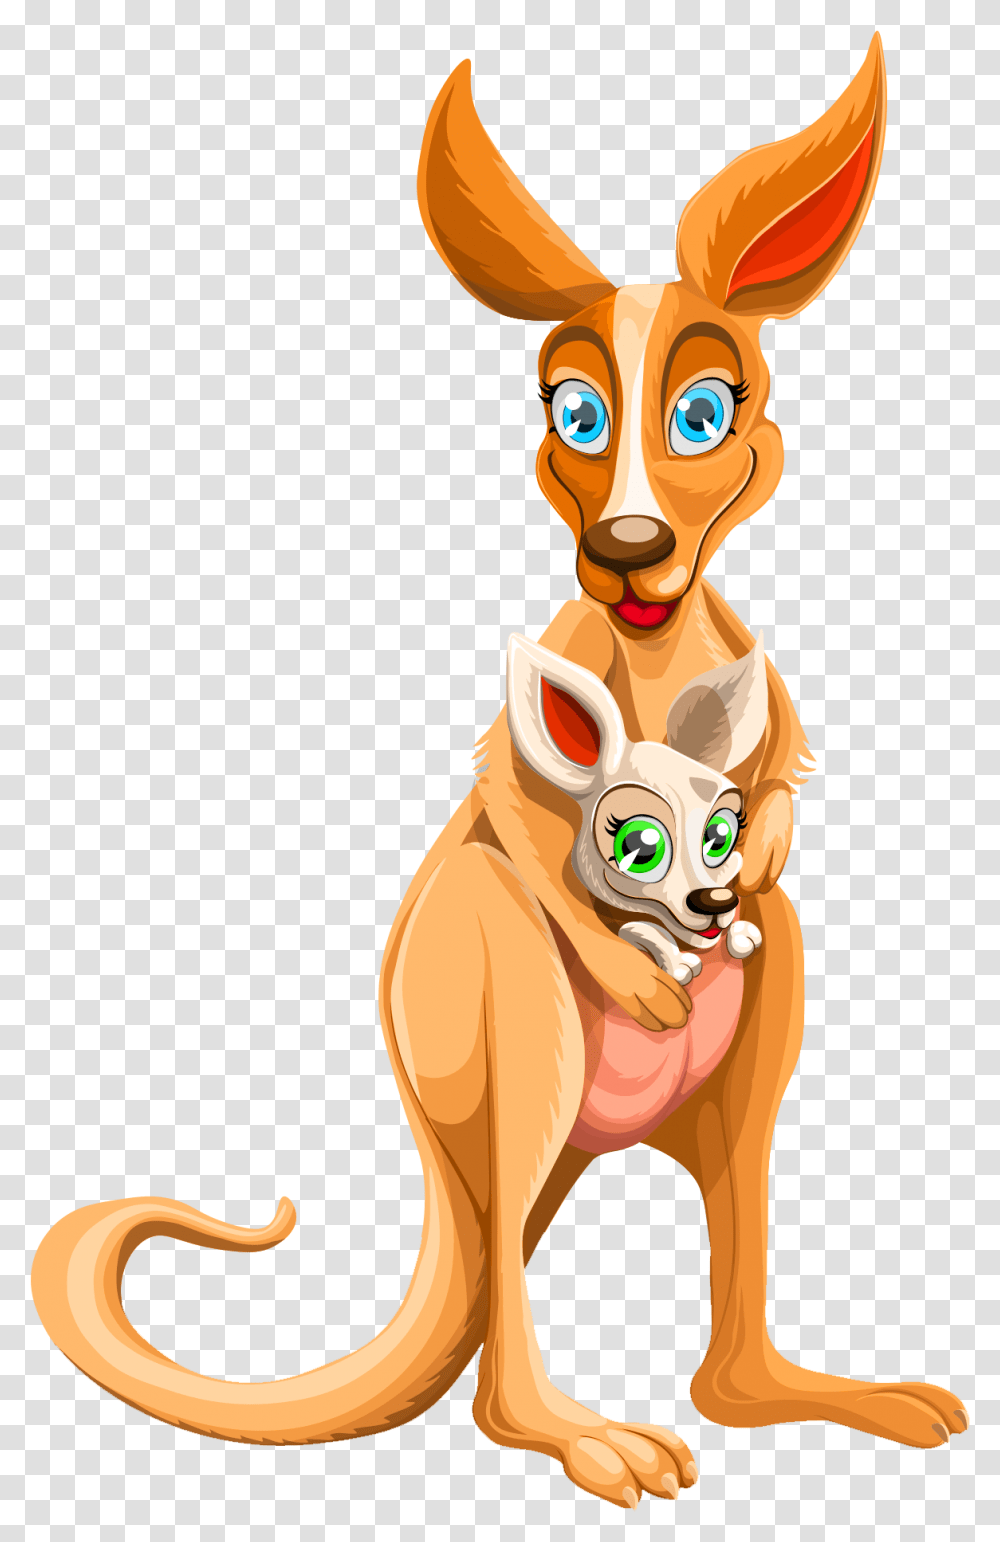 Cartoon Kangaroo 3 Image Background Kangaroo Cartoon, Mammal, Animal, Toy, Pet Transparent Png